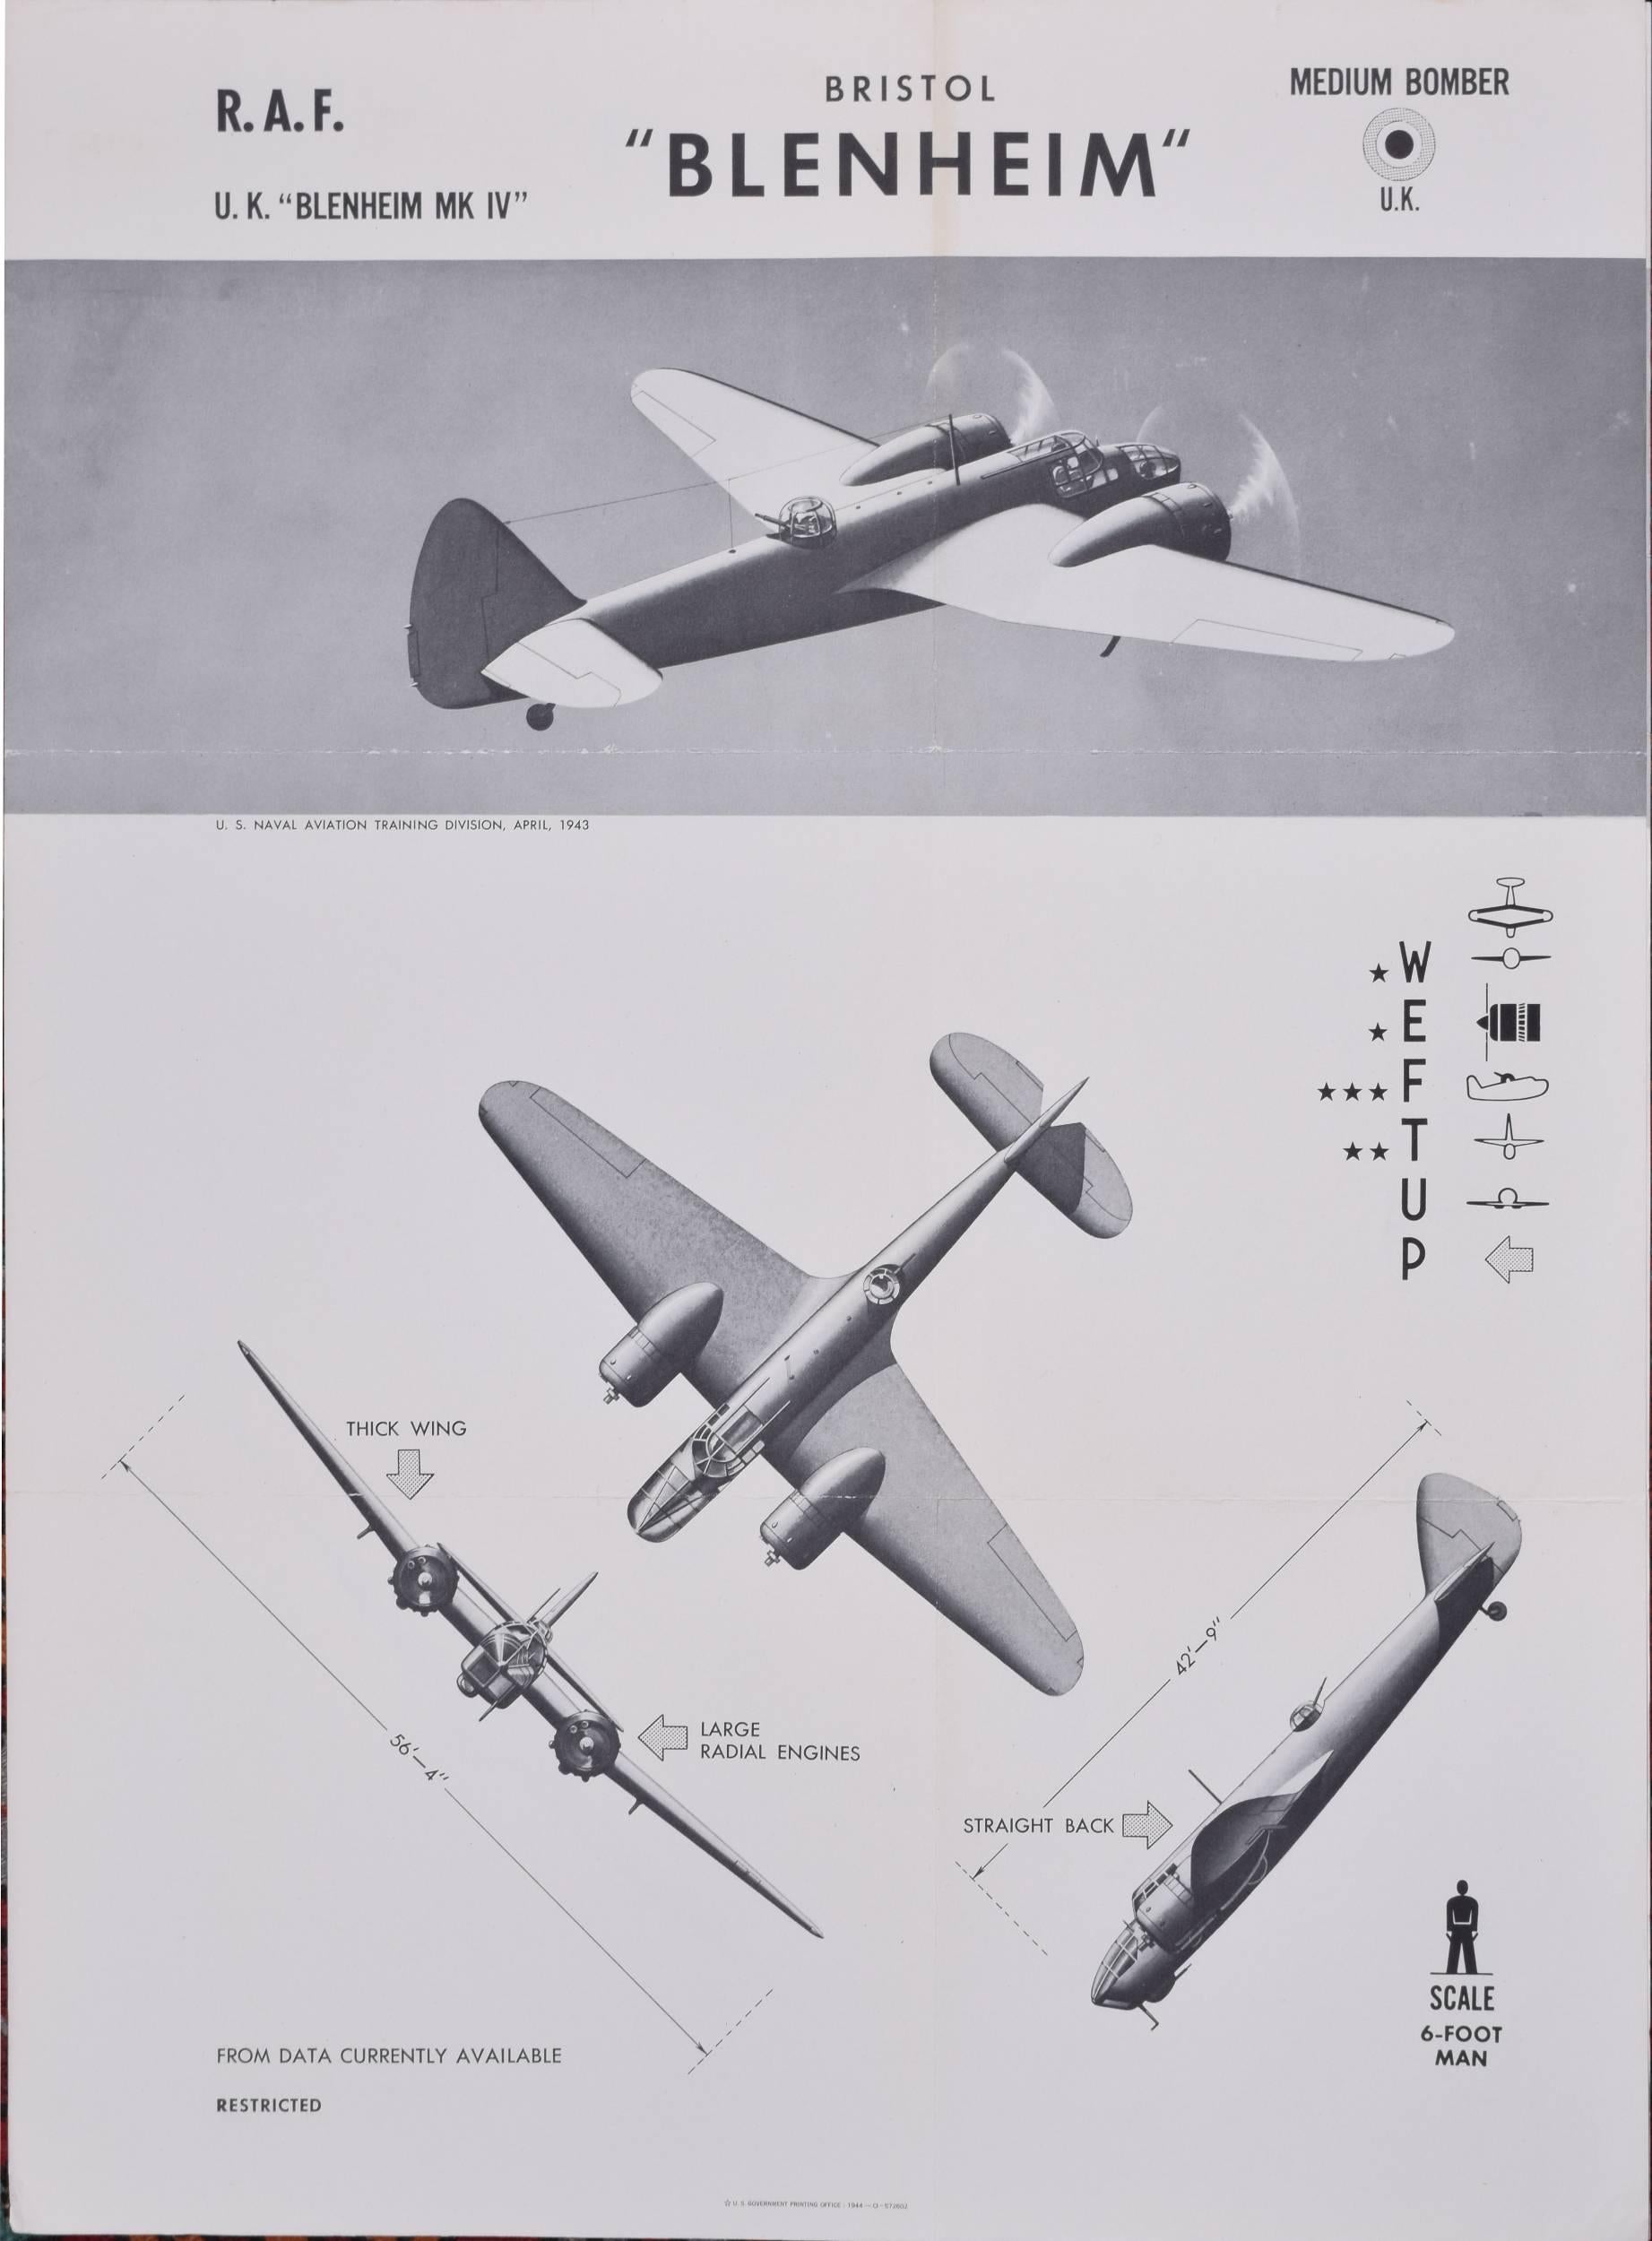 Affiche de la Royal Air Force Bristol Blenheim de 1943 de la division d'entraînement de l'aviation navale des États-Unis